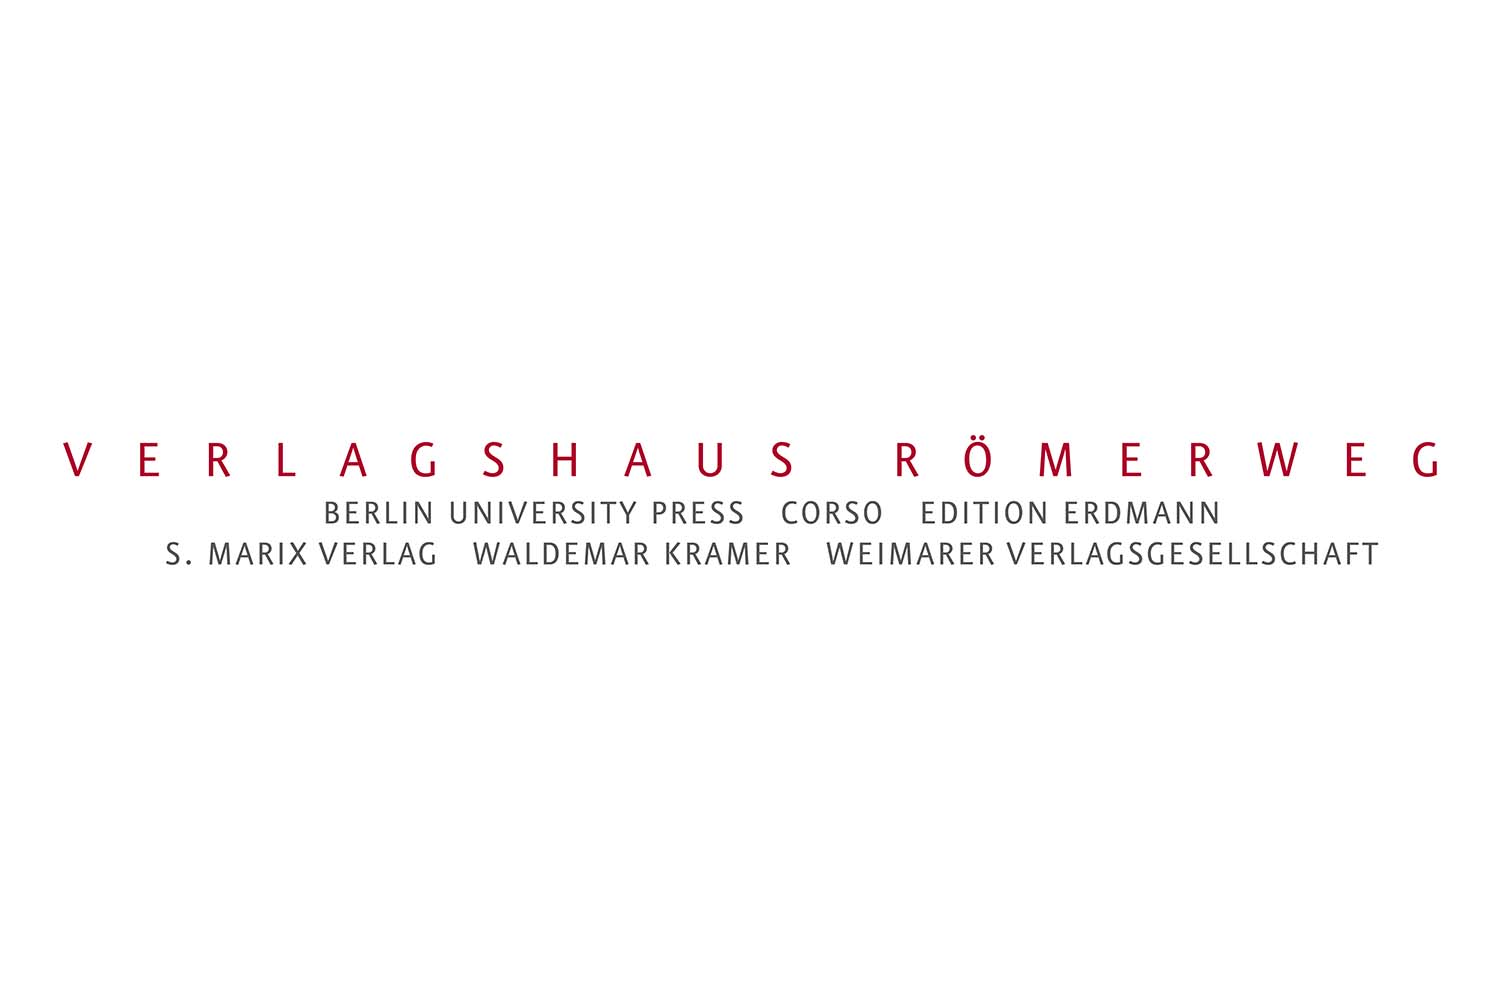 Verlagshaus Römerweg 